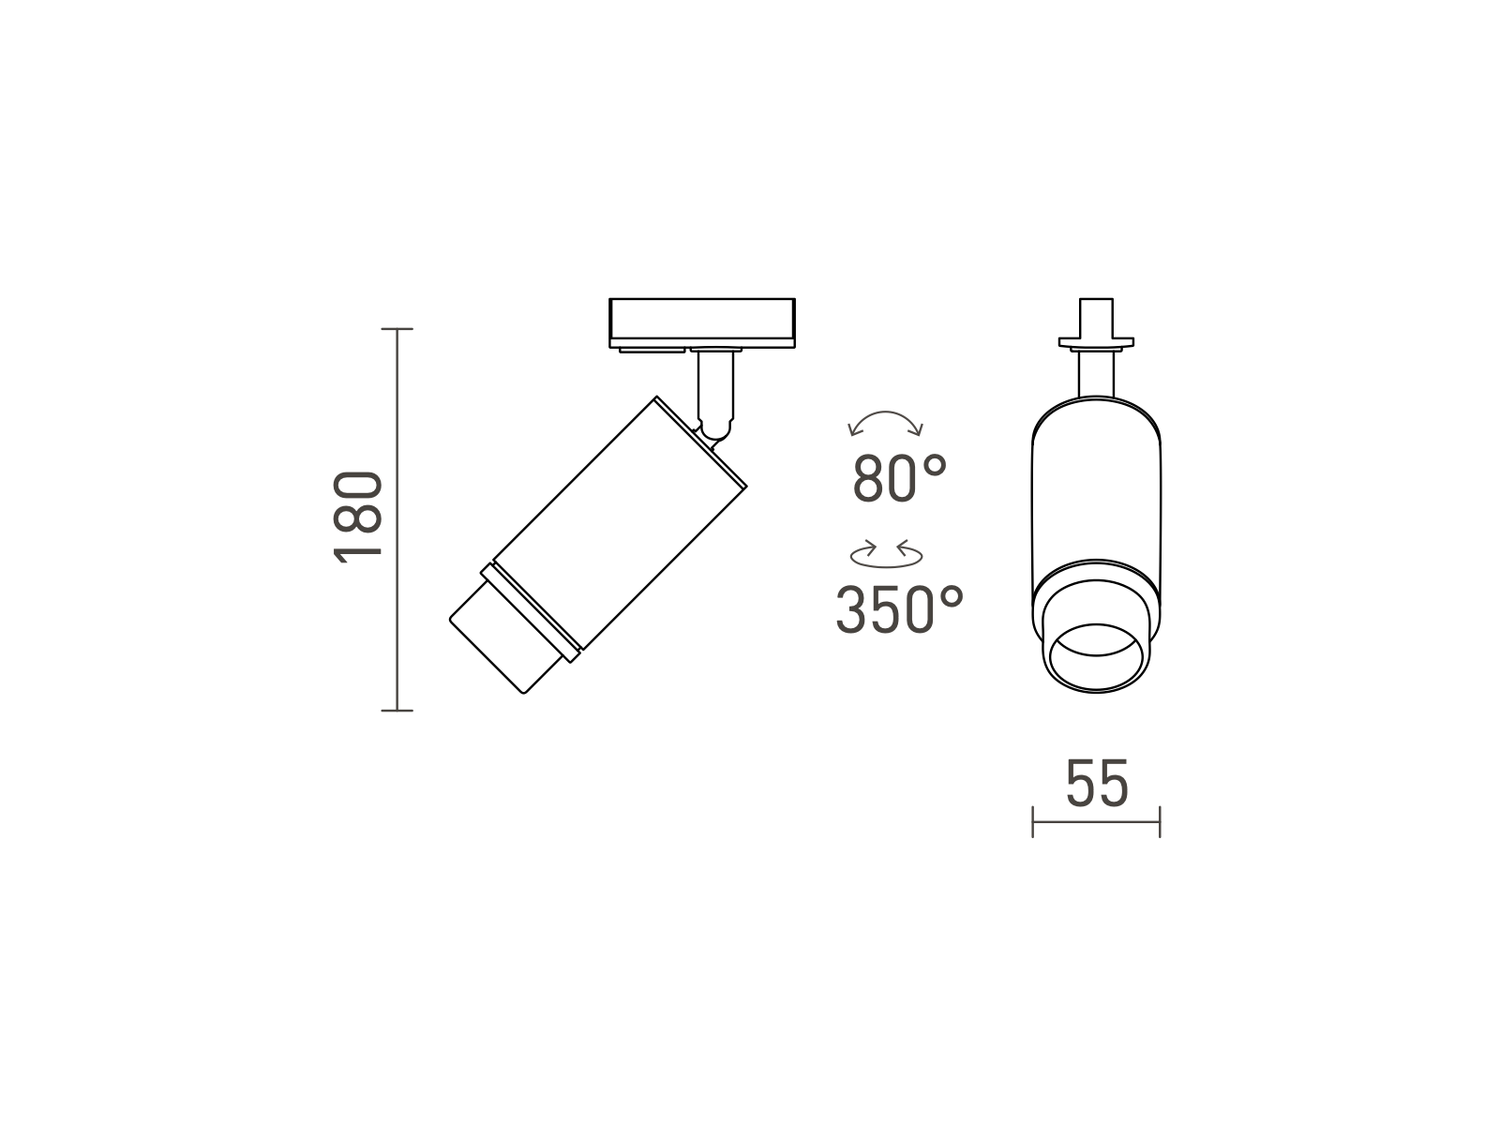 Stropní svítidlo OPTIMUS pro jednookruhovou lištu, bílé, 230V, GU10, 10-50°, 18cm